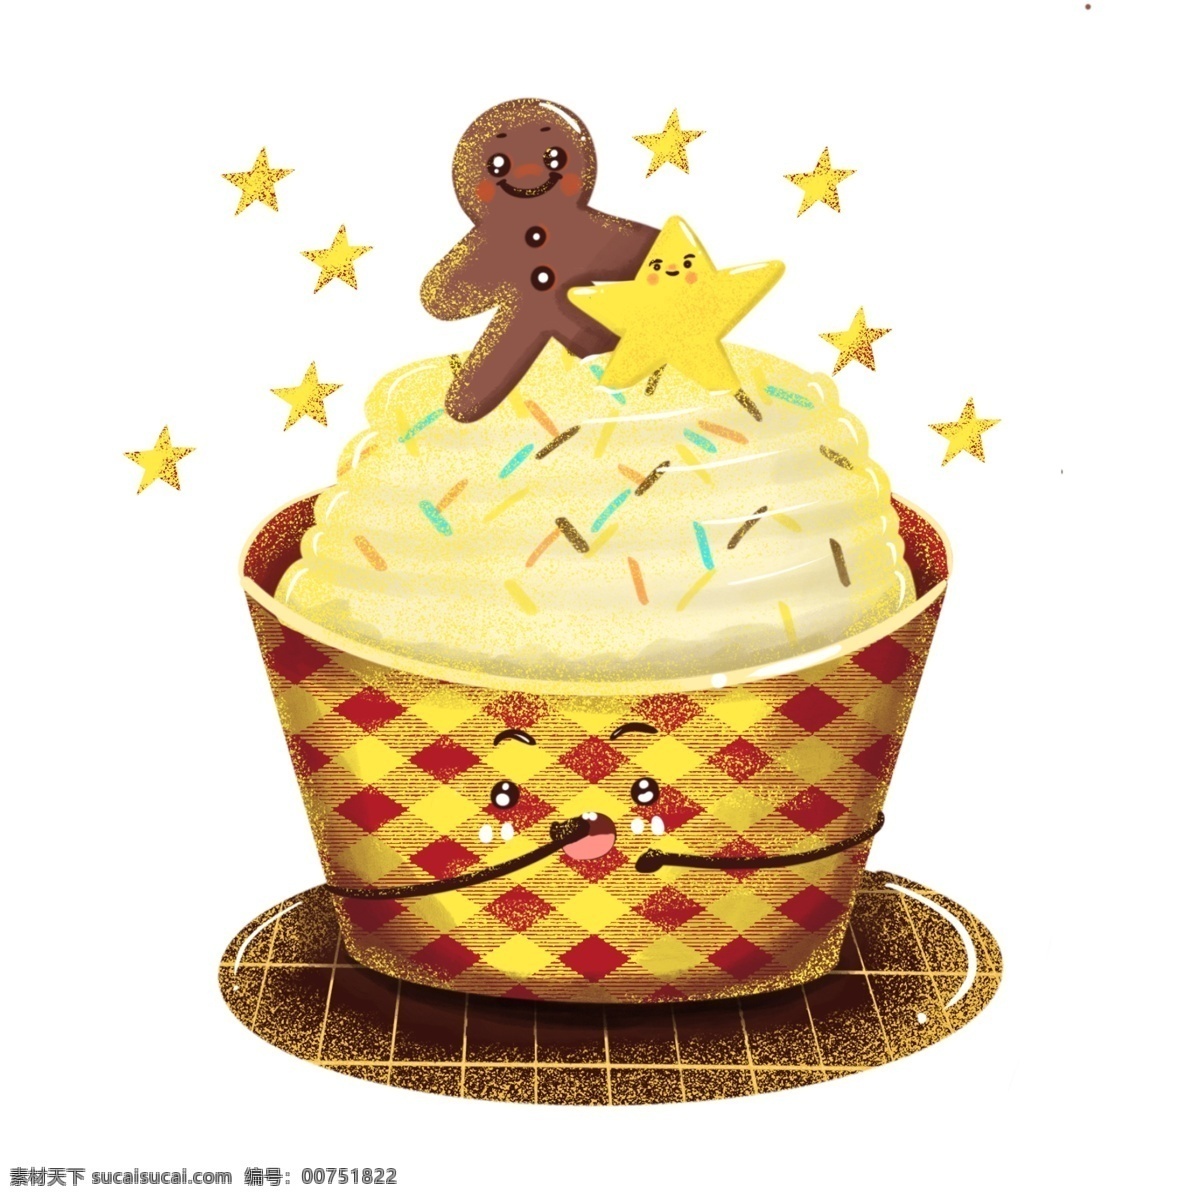 格子 巧克力 奶油 甜品 蛋糕 姜 娃 星星 卡通 可爱 甜品店 手绘 姜娃